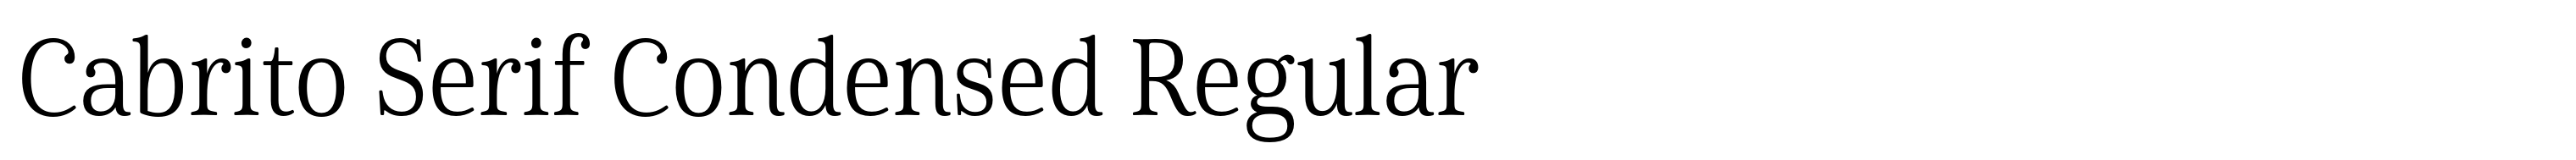 Cabrito Serif Condensed Regular